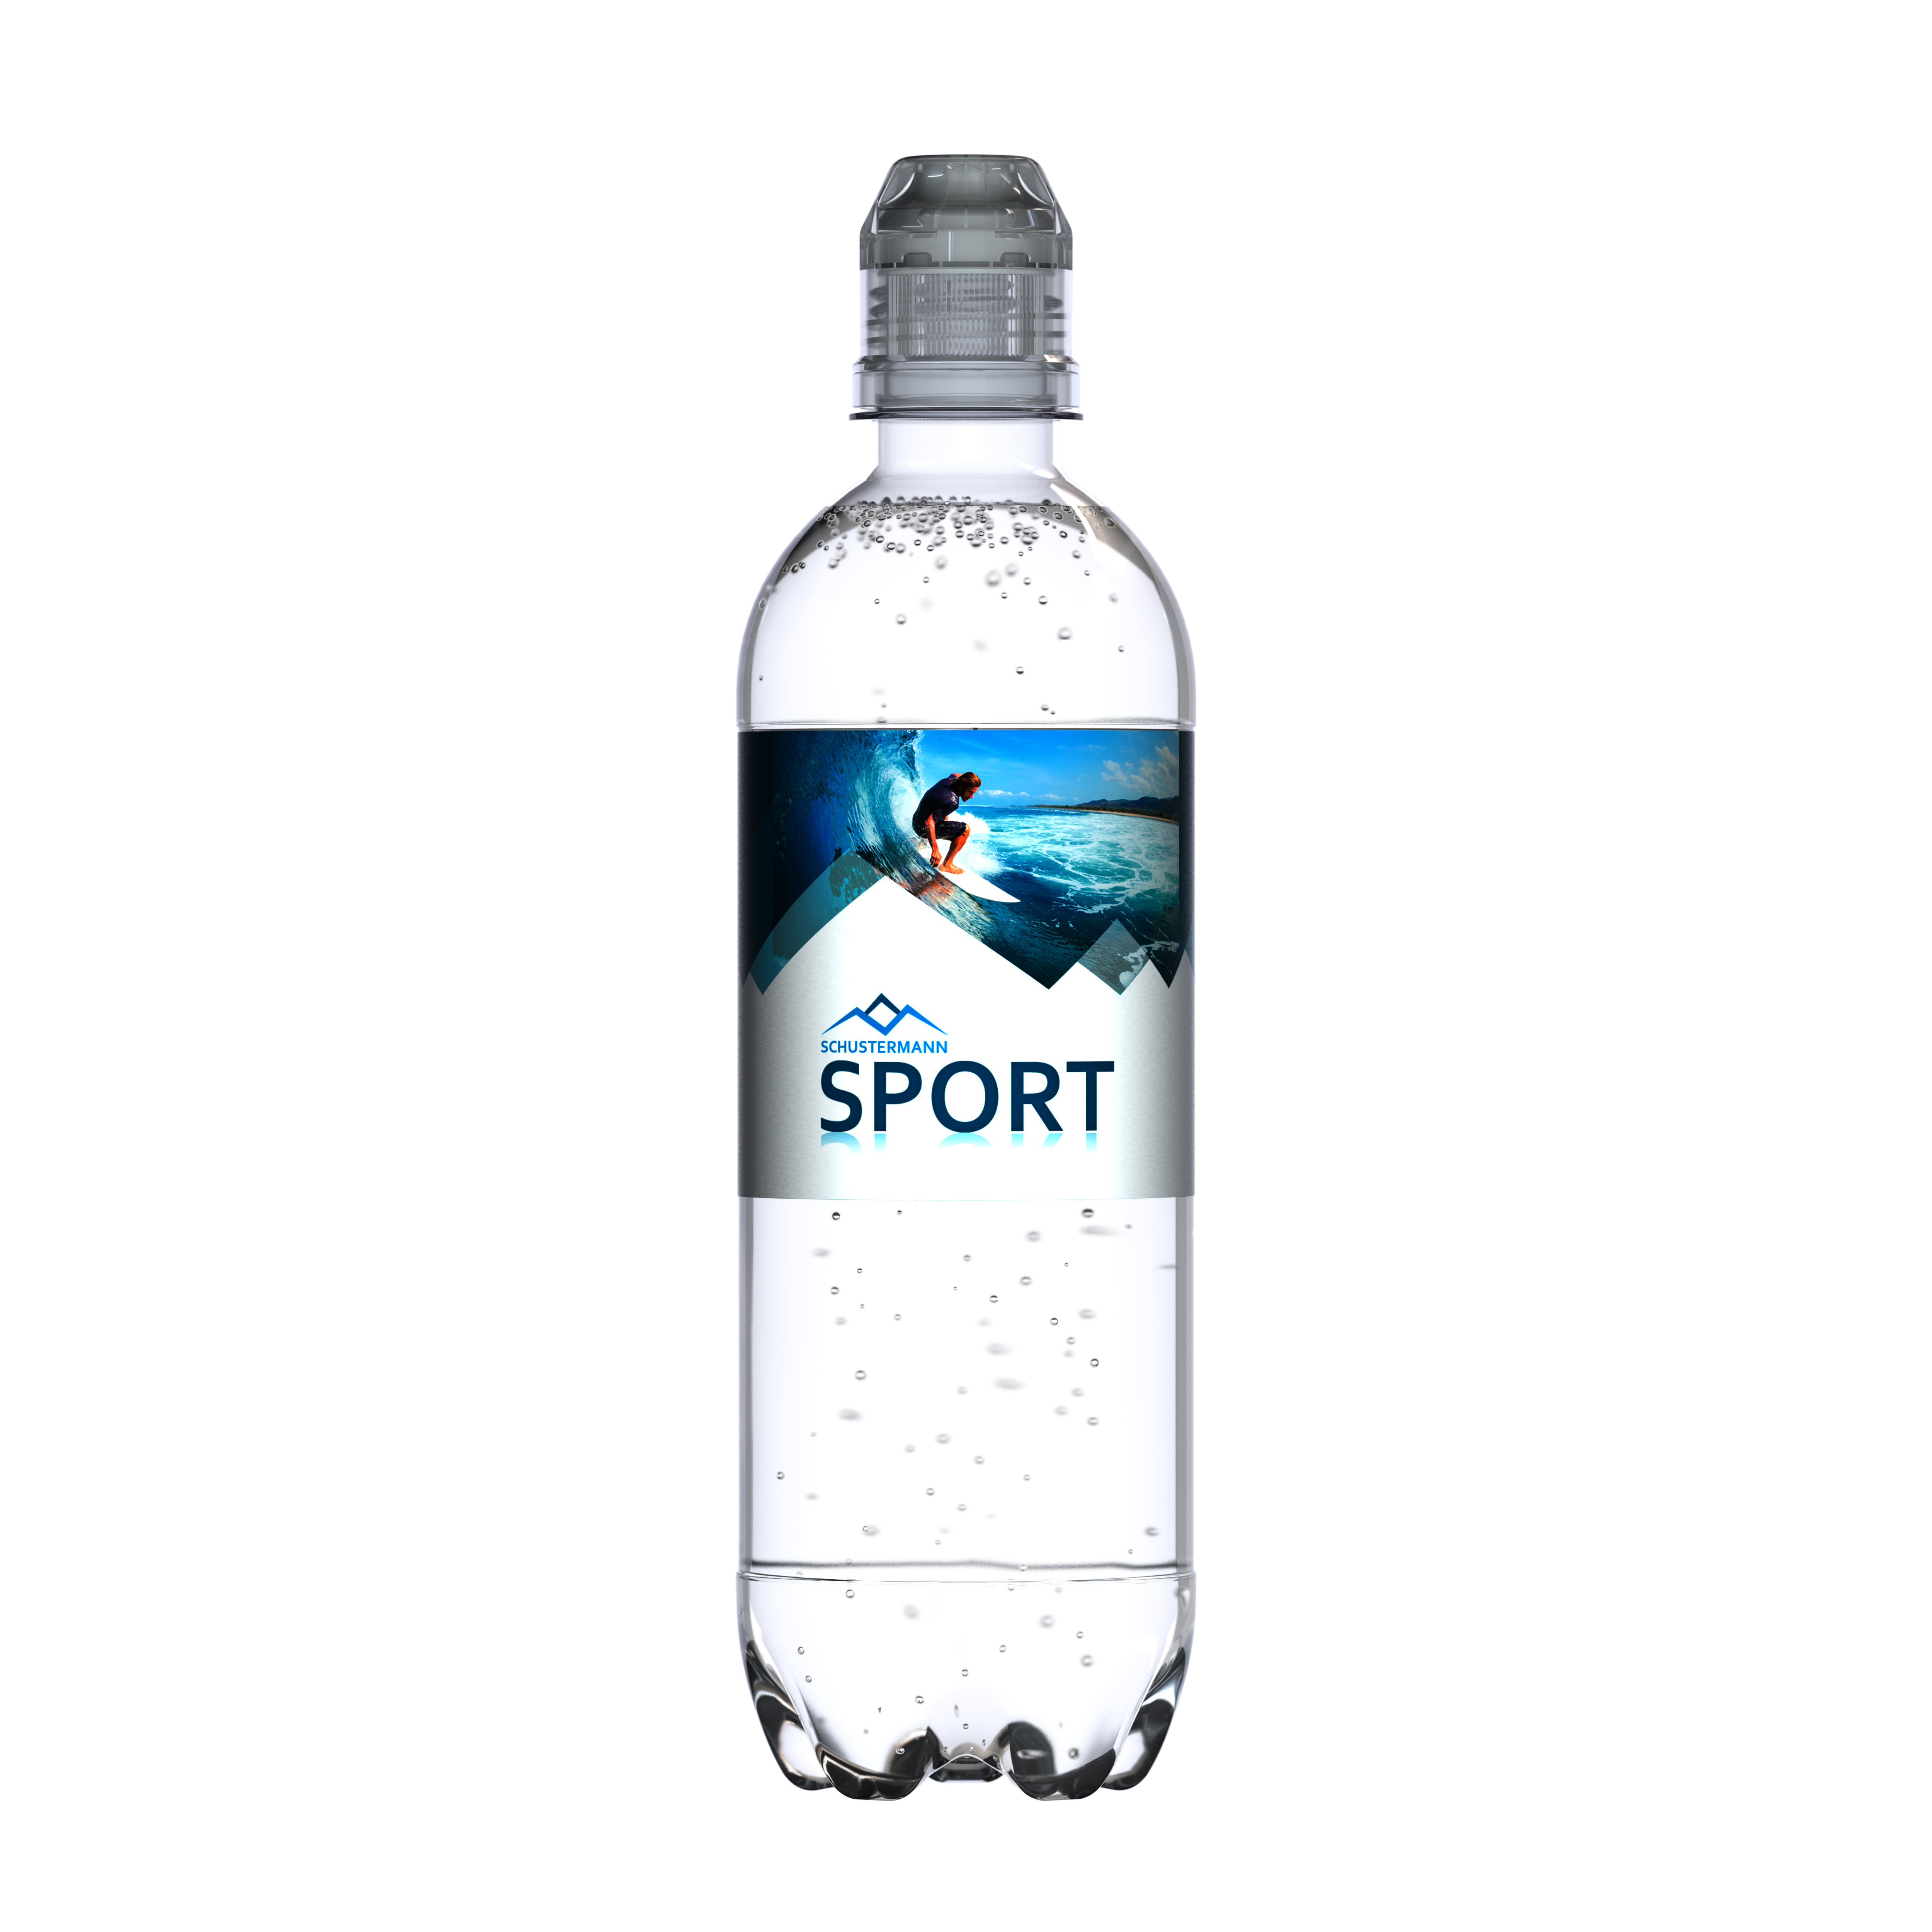 500 ml Quellwasser medium (Sportcap) - Smart Label (Export - Pfandfrei)